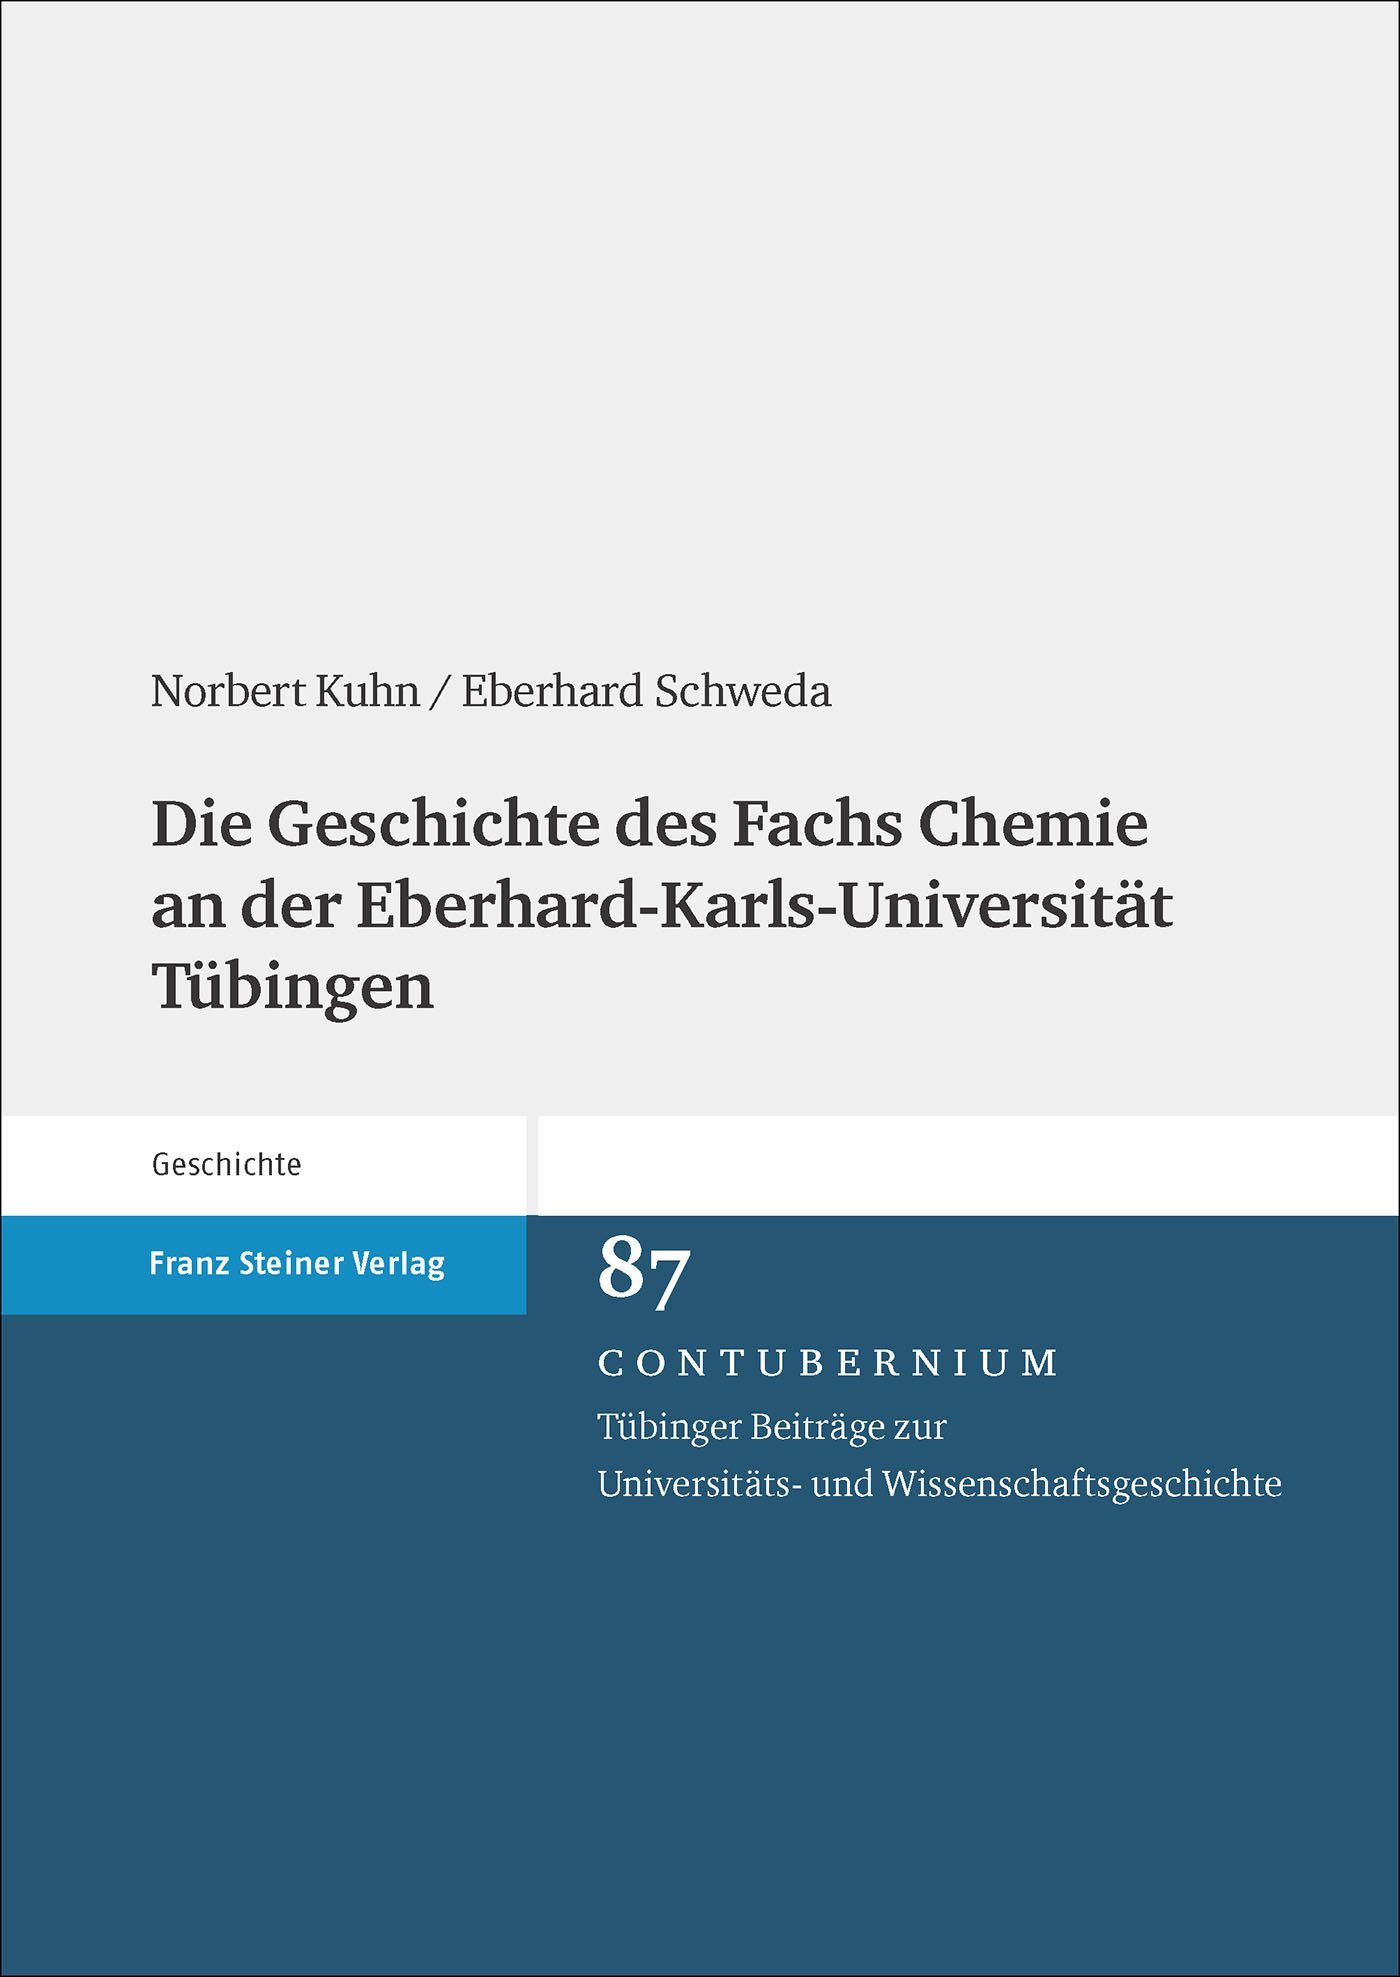 Die Geschichte des Fachs Chemie an der Eberhard-Karls-Universität Tübingen